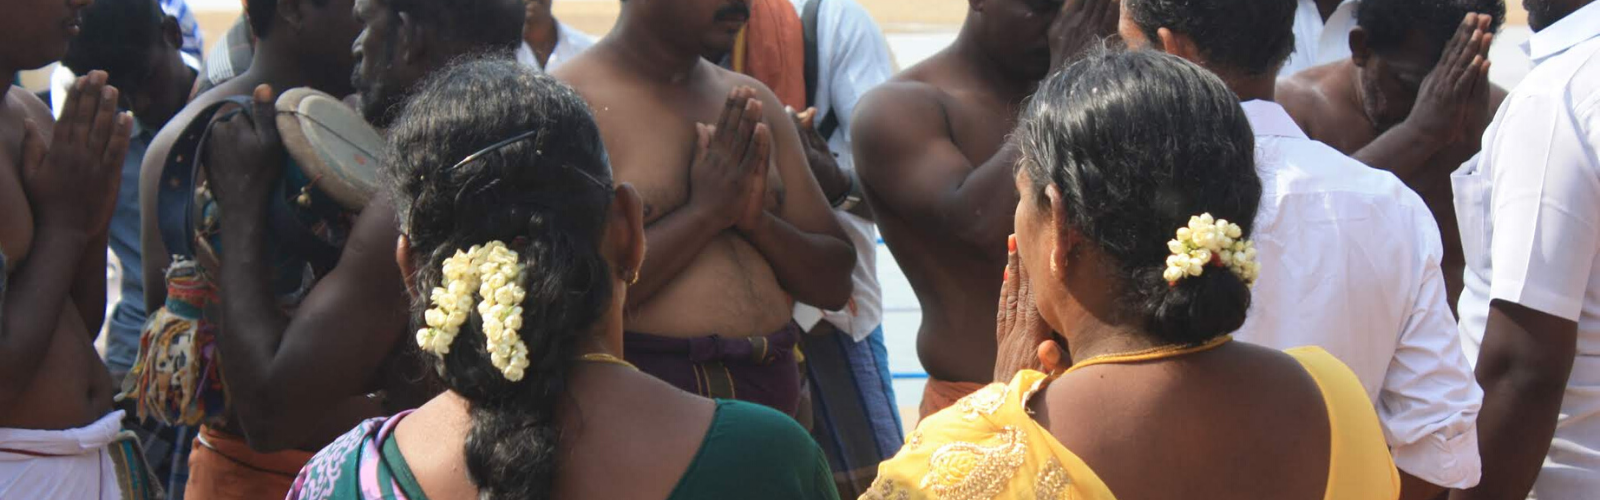 15 et 16 août, fêtes nationales à Pondichéry Double Sens